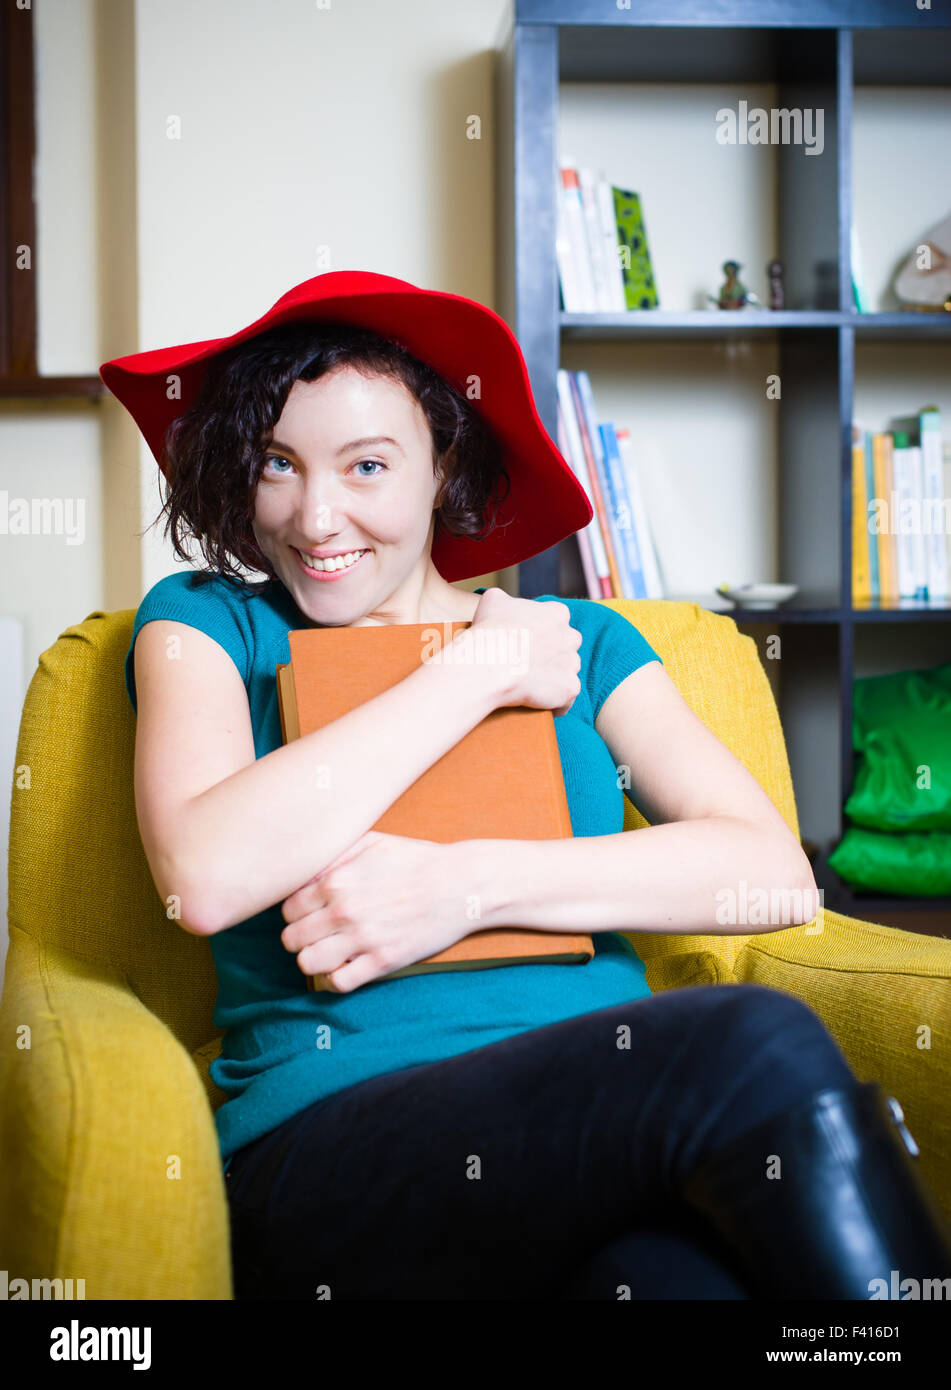 Junge Frau mit roten Hut lächelnd mit einem Buch mit brauner Deckel Stockfoto